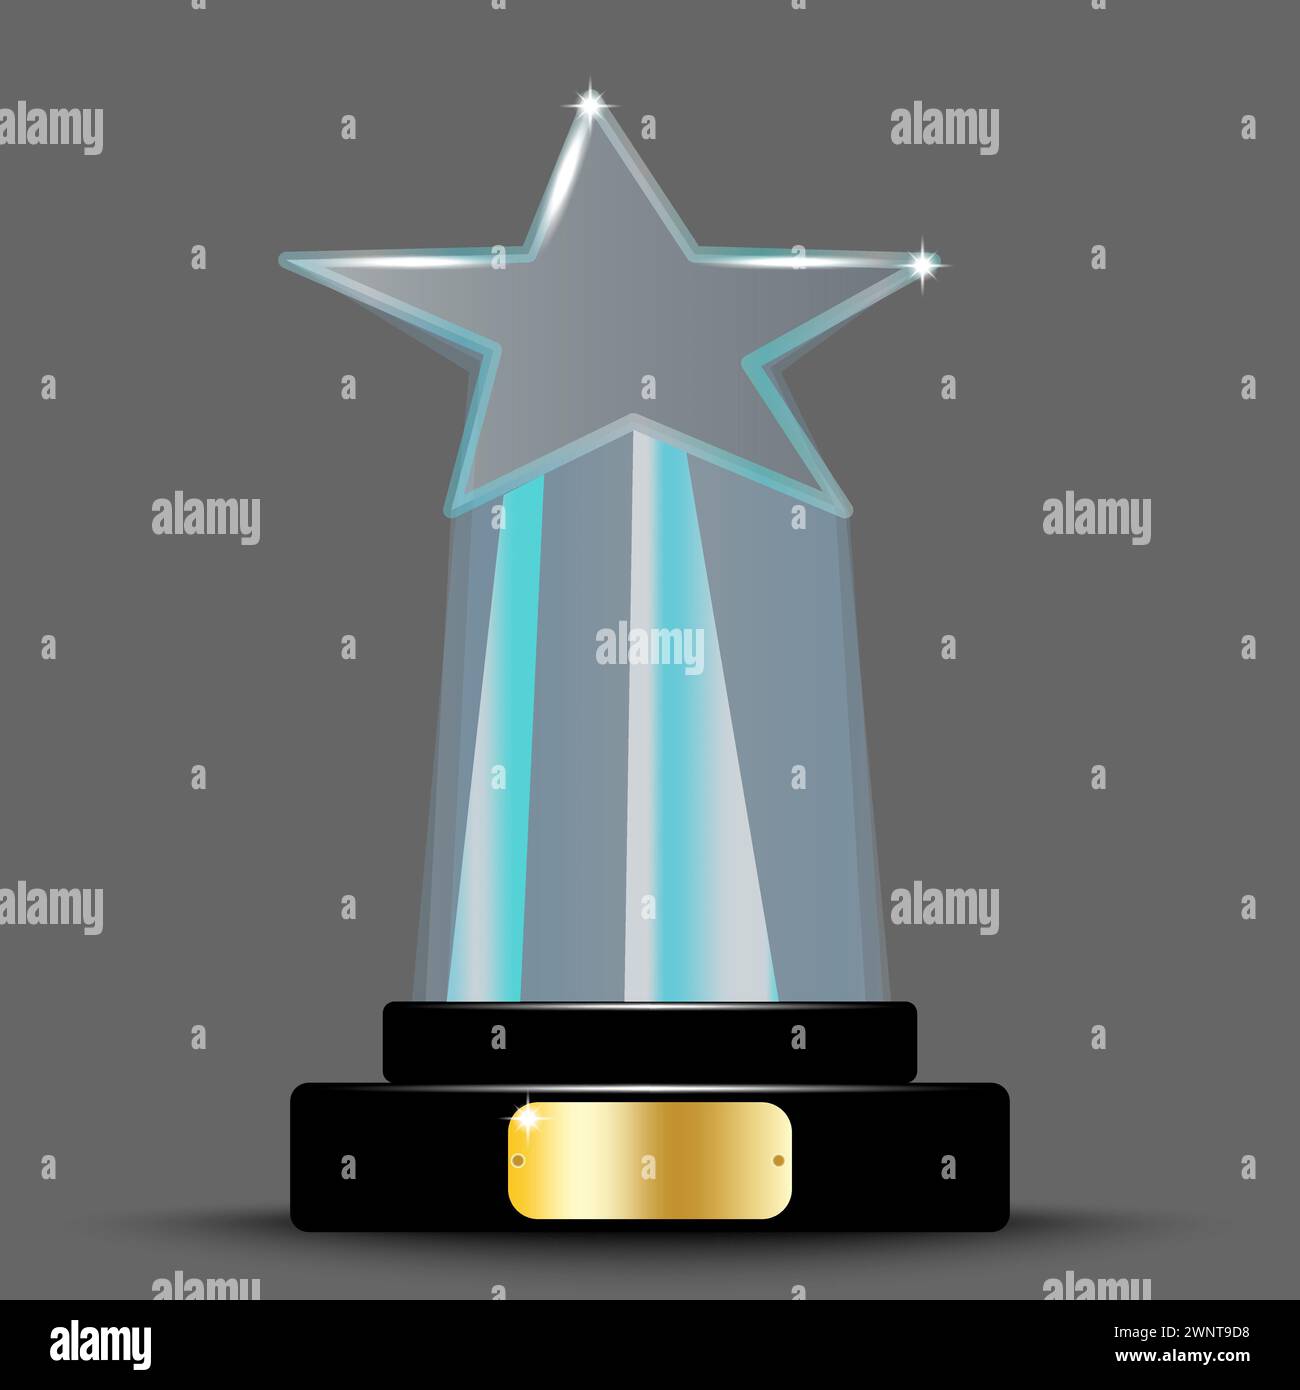 Design realistico del layout dei premi. Trofeo di vetro sotto forma di stella. stella in cristallo acrilico 3d. Illustrazione vettoriale. immagine stock. EPS 10. Illustrazione Vettoriale